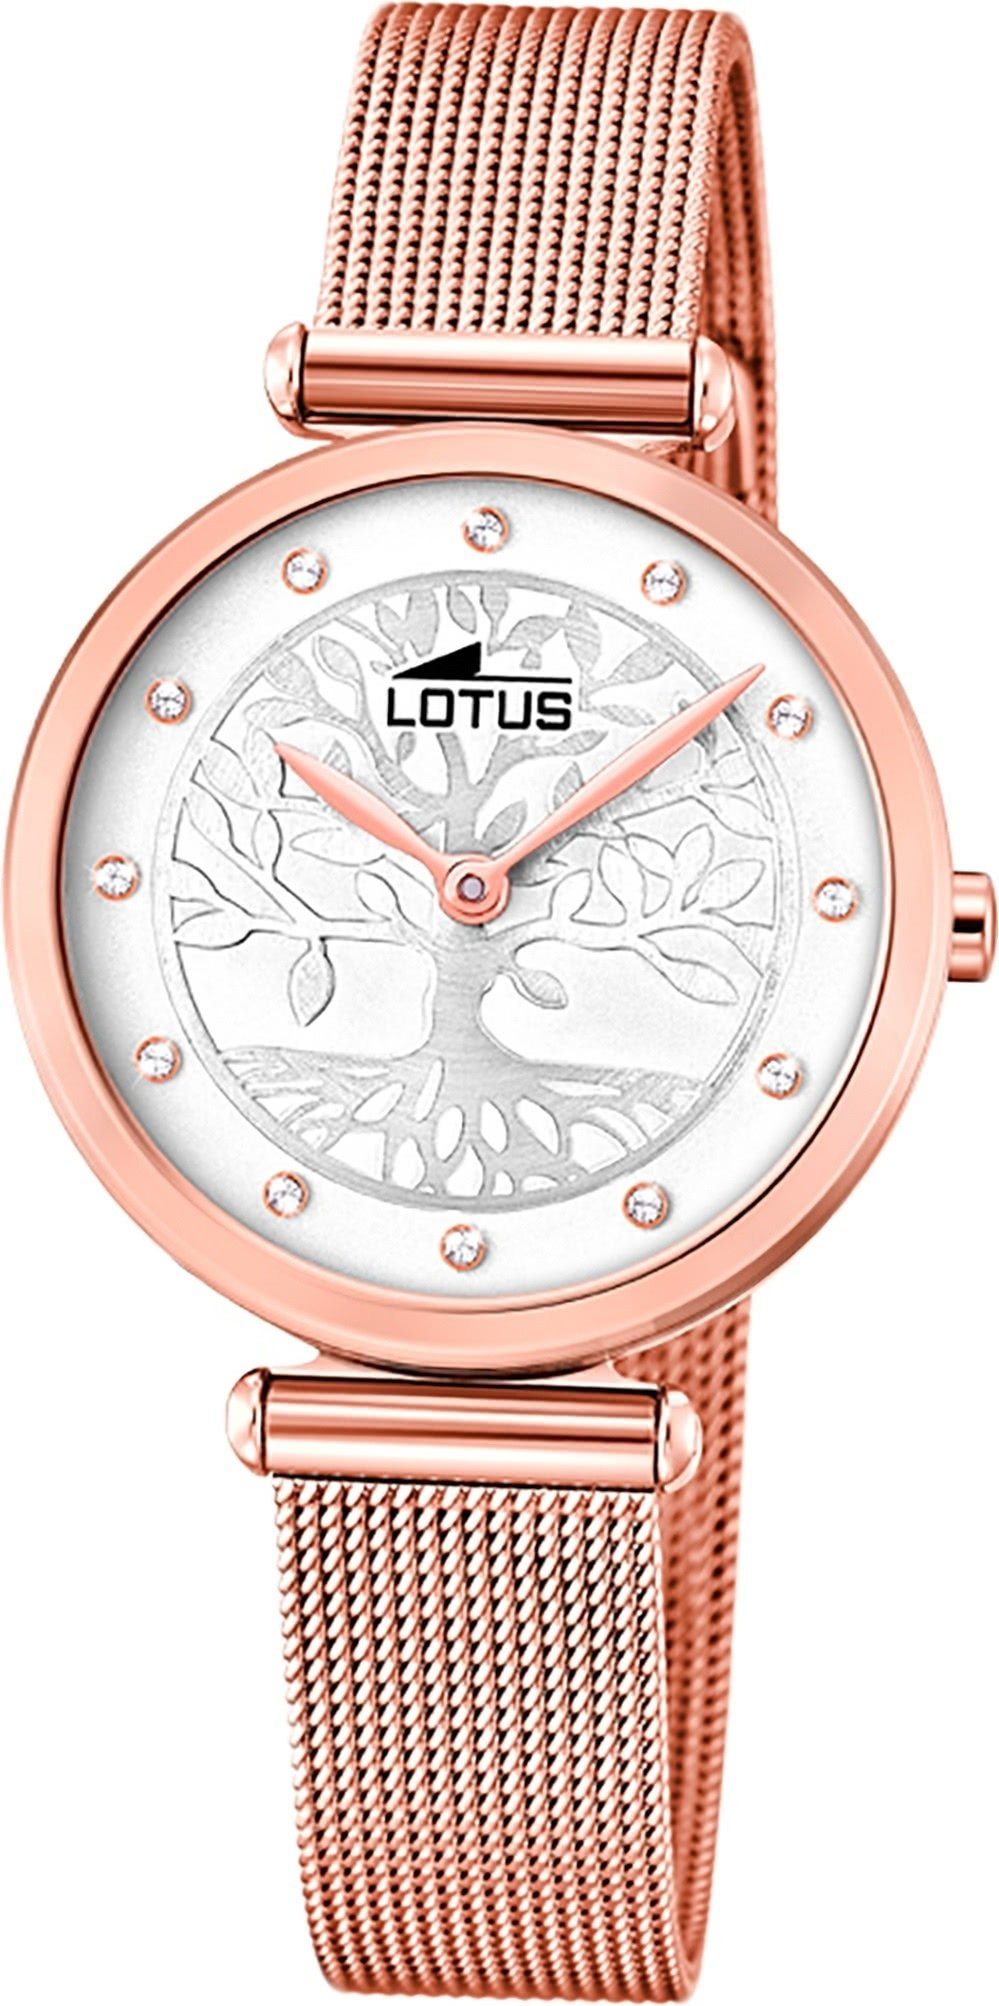 Lotus Quarzuhr LOTUS Edelstahl Damen Uhr 18710/1, Damenuhr mit Edelstahlarmband, rundes Gehäuse, klein (ca. 29mm), Fashi